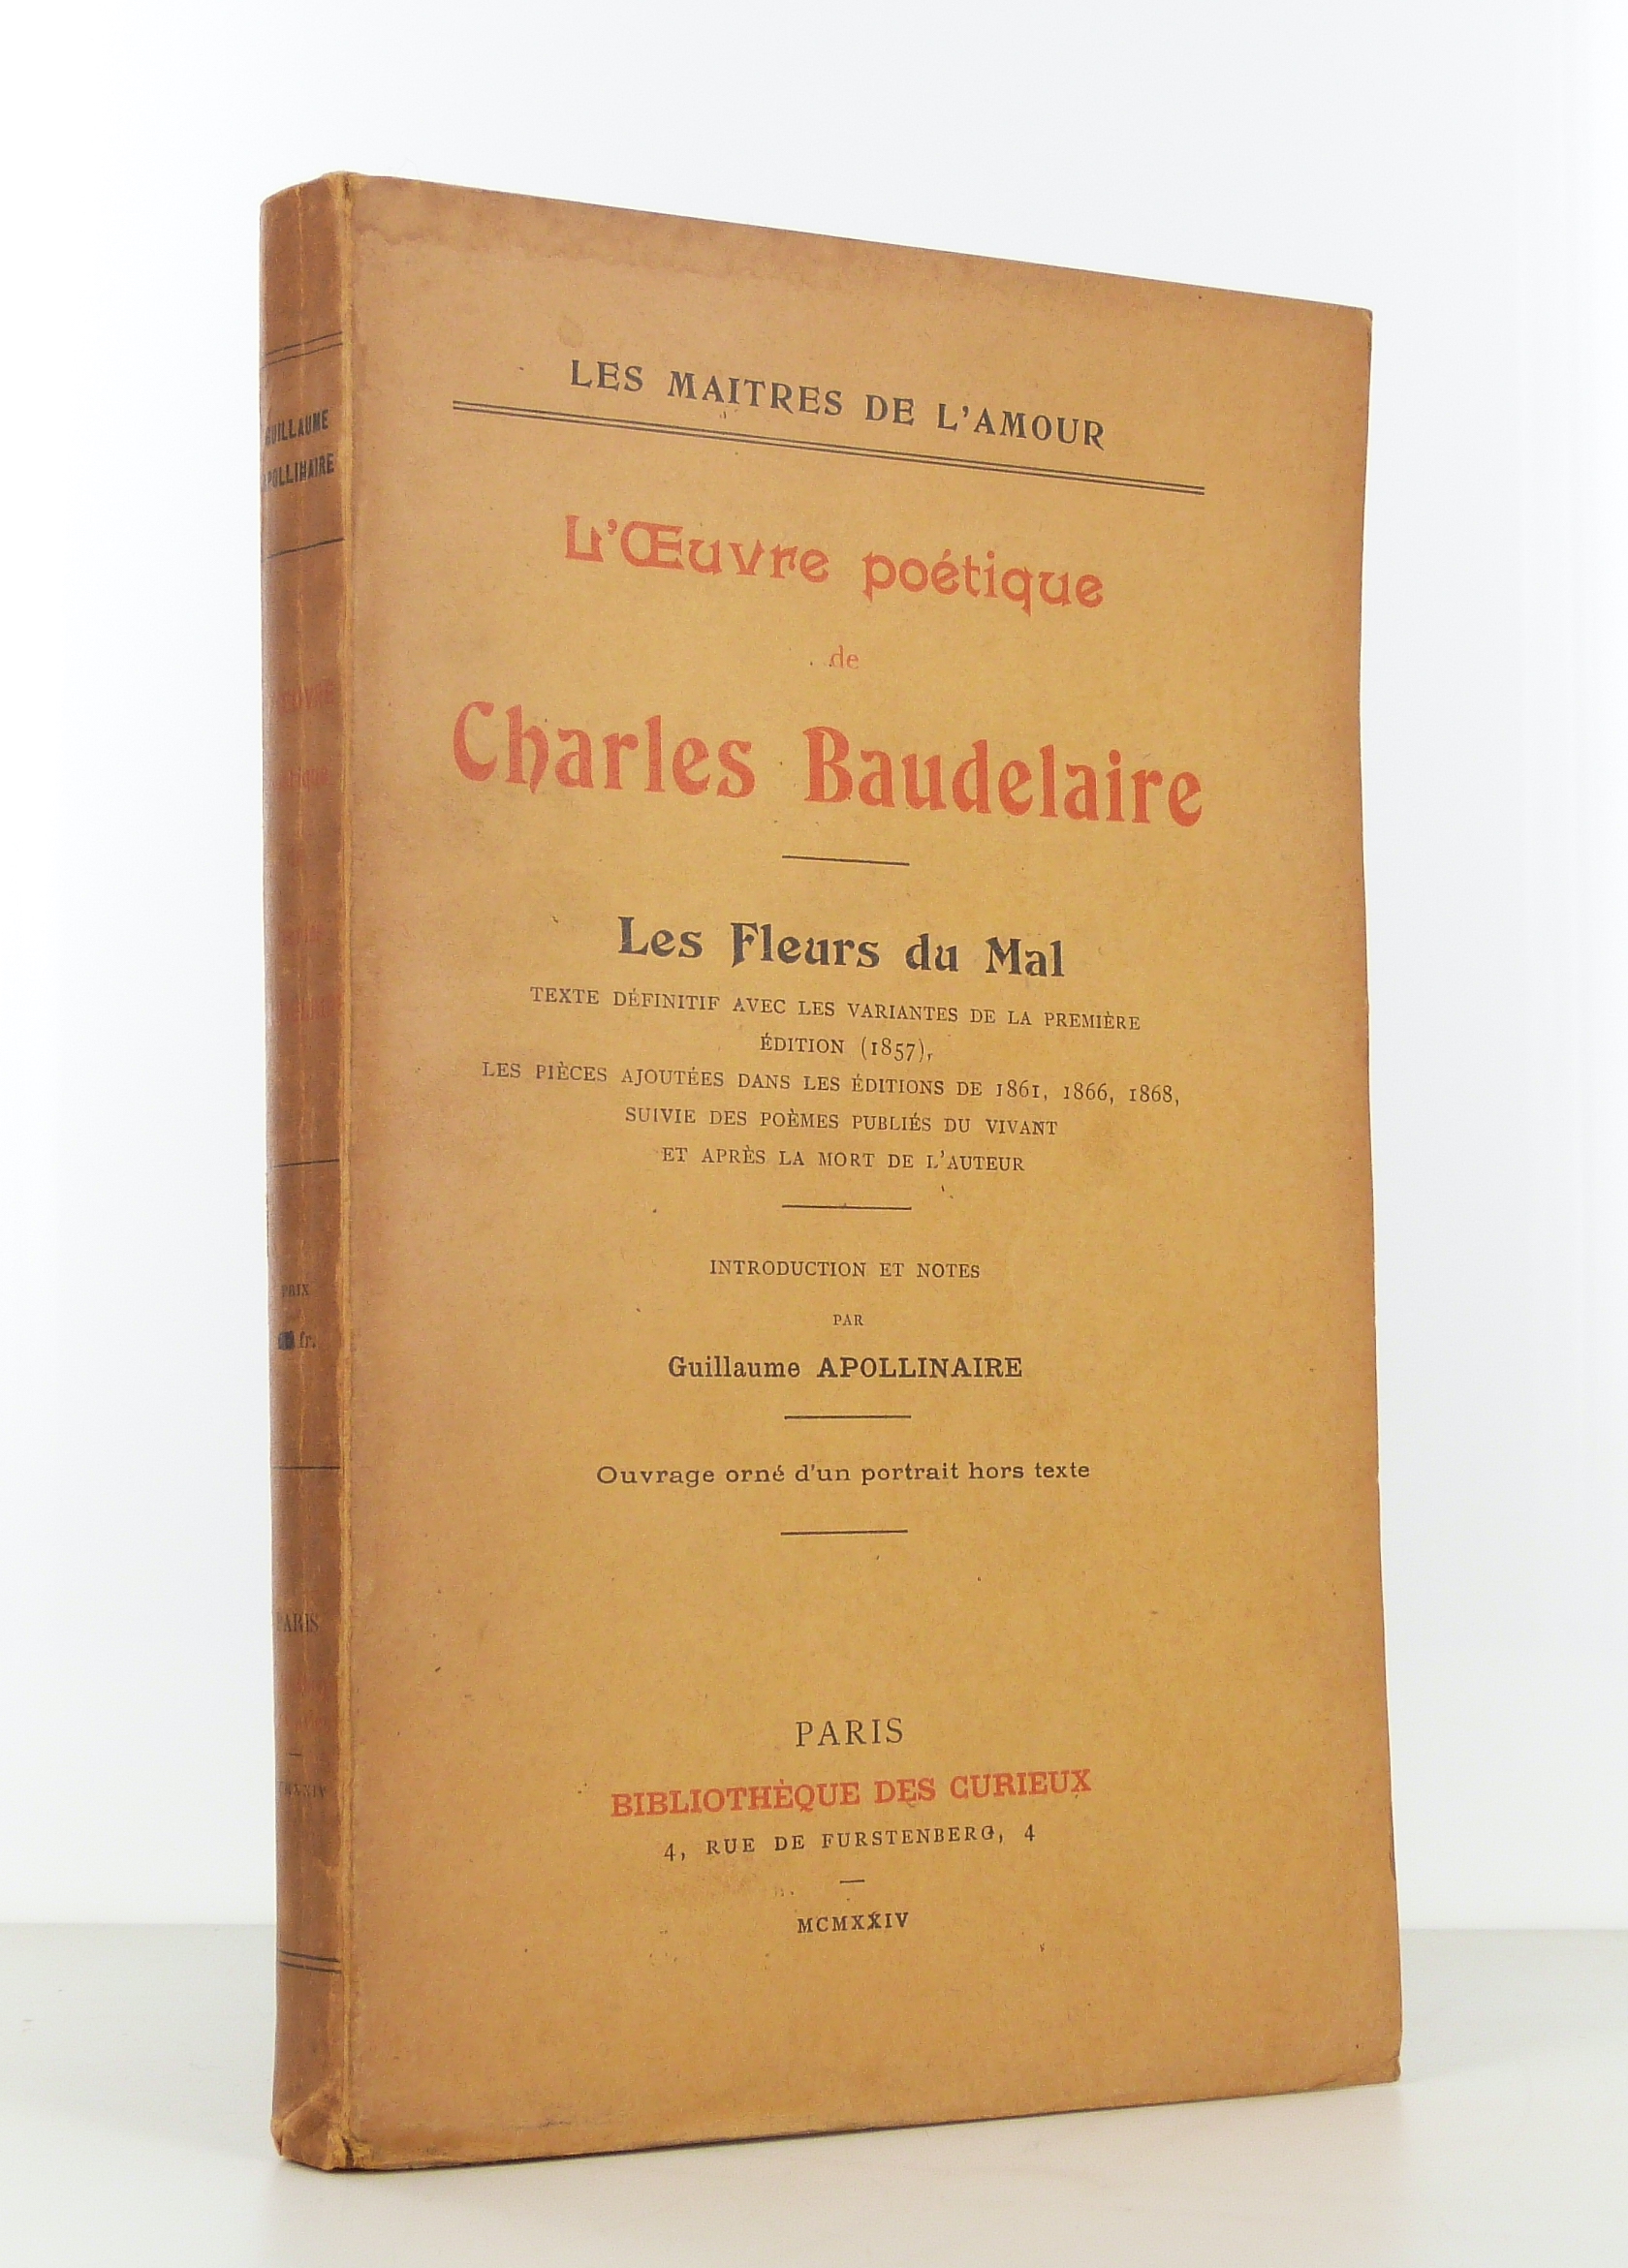 L’Œuvre  poétique de Charles Baudelaire. Les Fleurs du mal. Texte définitif avec les variantes de la première édition (1857). 